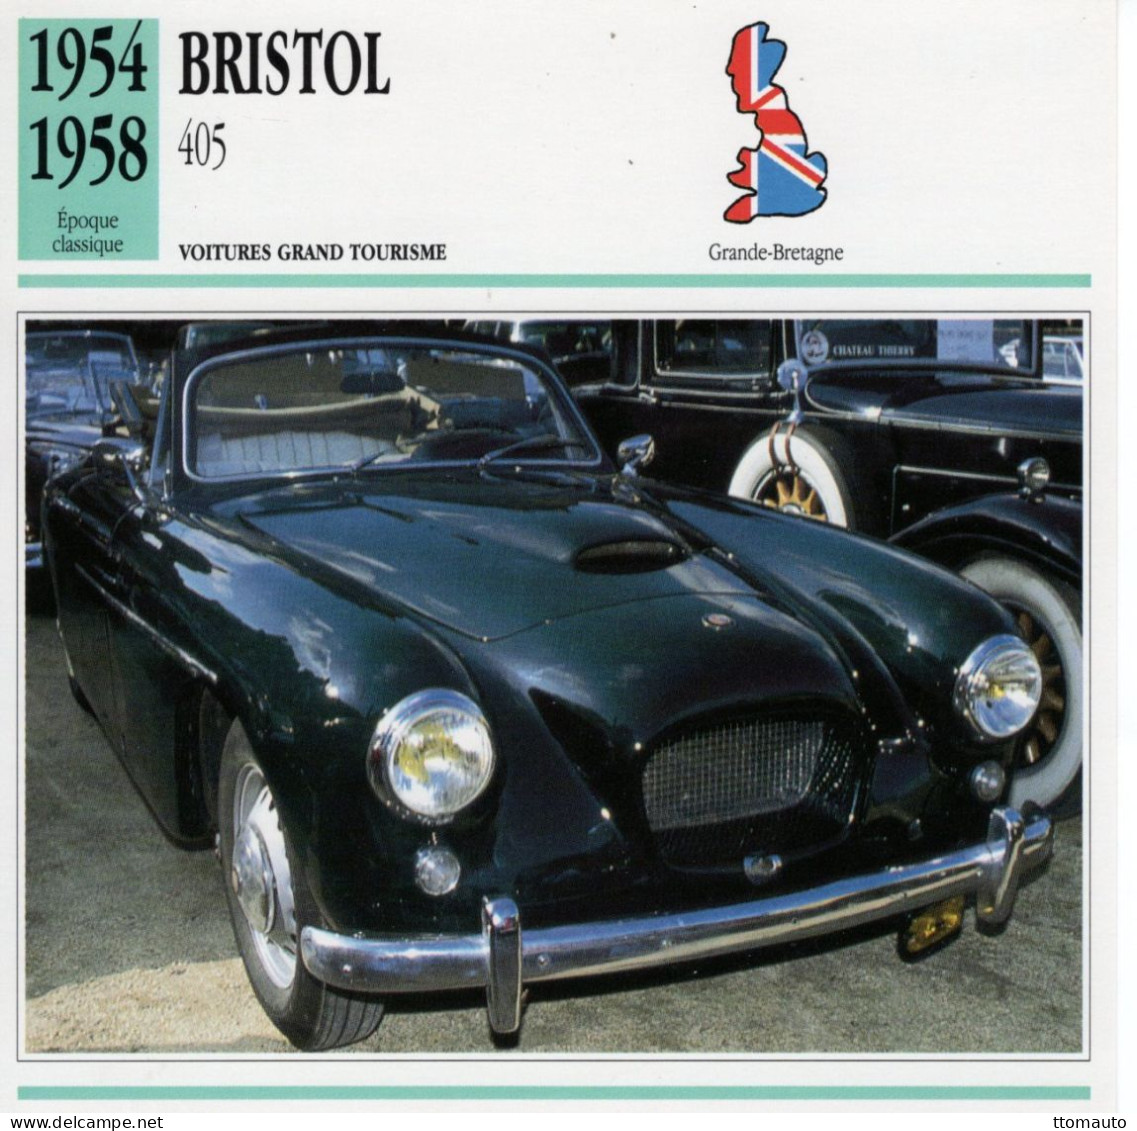 Bristol 405  -  1956  - Voiture Grand Tourisme -  Fiche Technique Automobile (GB) - Voitures